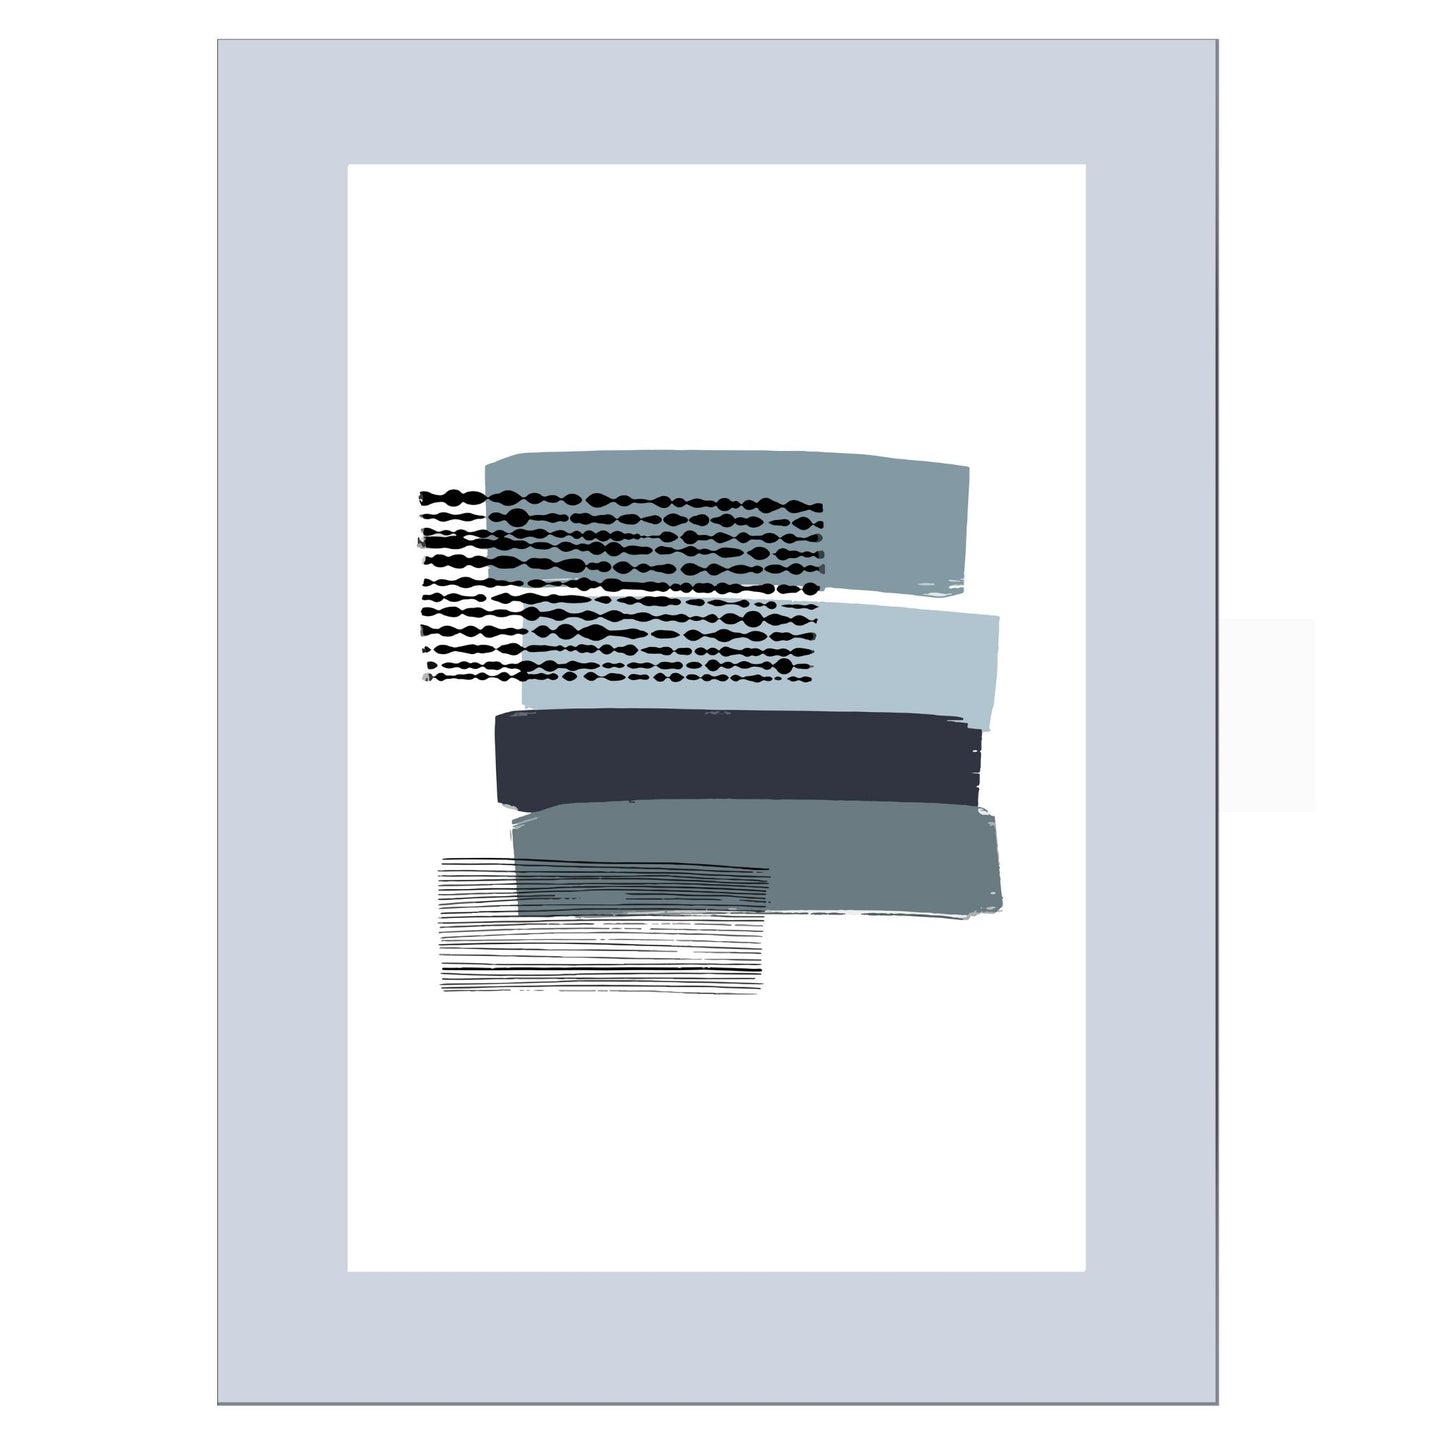 Grafisk plakat i abstrakt horisontalt stripete mønster i blått og grått på hvit bakgrunn. Plakaten har en grå kant som gir dybde og fremhever motivet.